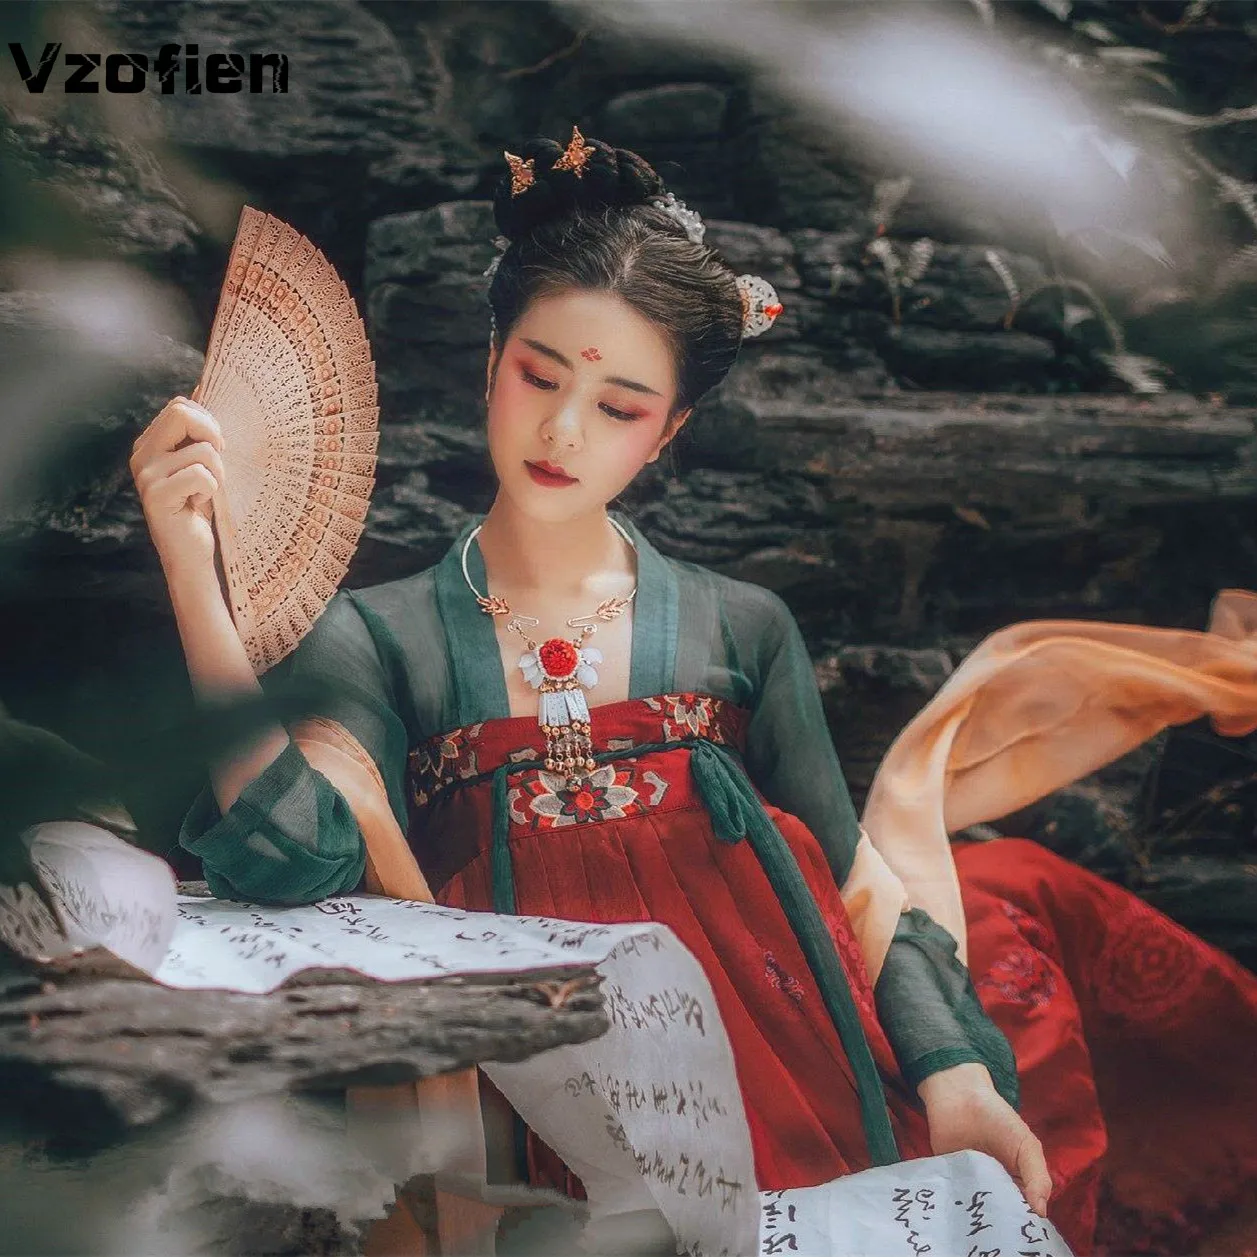 

Женское традиционное китайское платье Hanfu с вышивкой, танцевальный костюм принцессы в восточном стиле династии Тан, костюм для народного та...